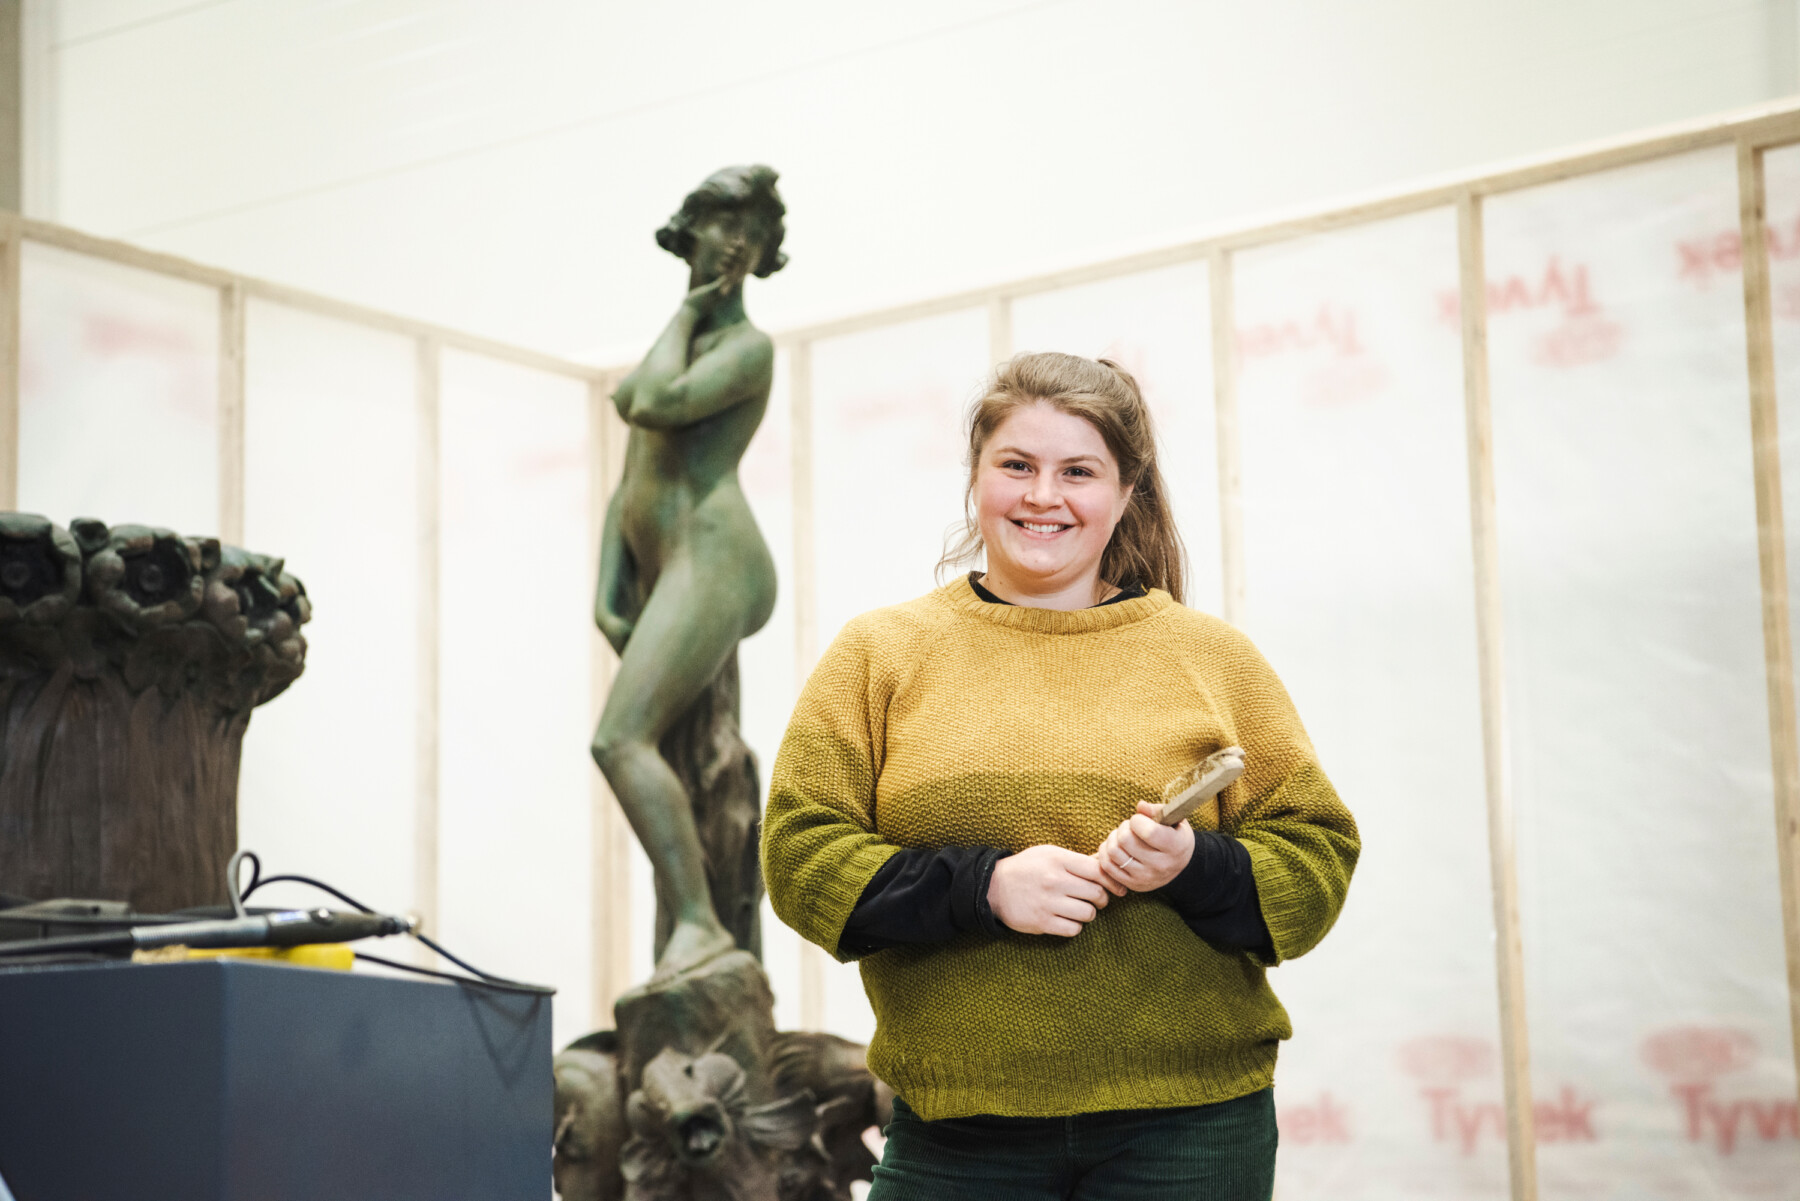 Uma mulher com um pincel nas mãos está em uma oficina em frente a uma estátua de metal de uma figura feminina.